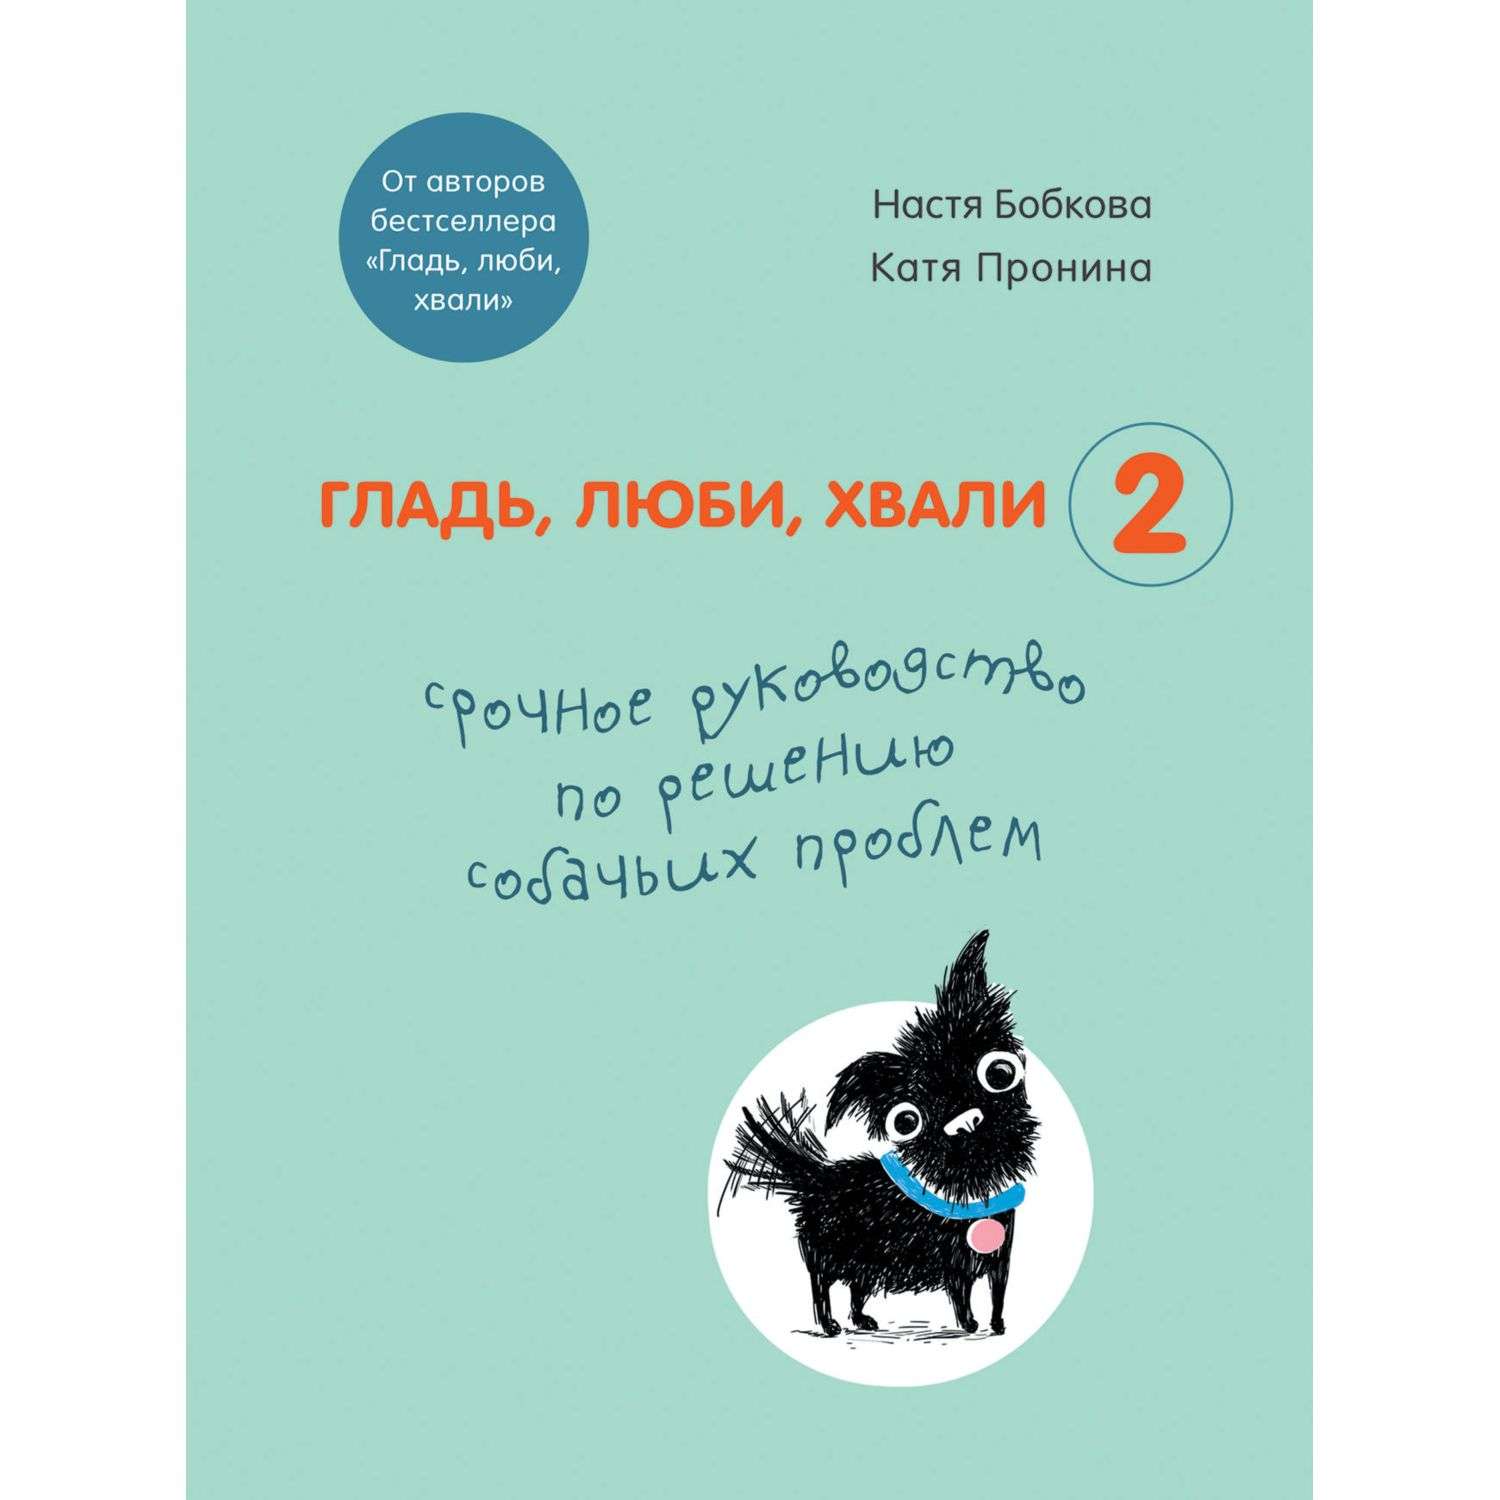 Книга БОМБОРА Гладь люби хвали 2 Срочное руководство по решению собачьих проблем - фото 1